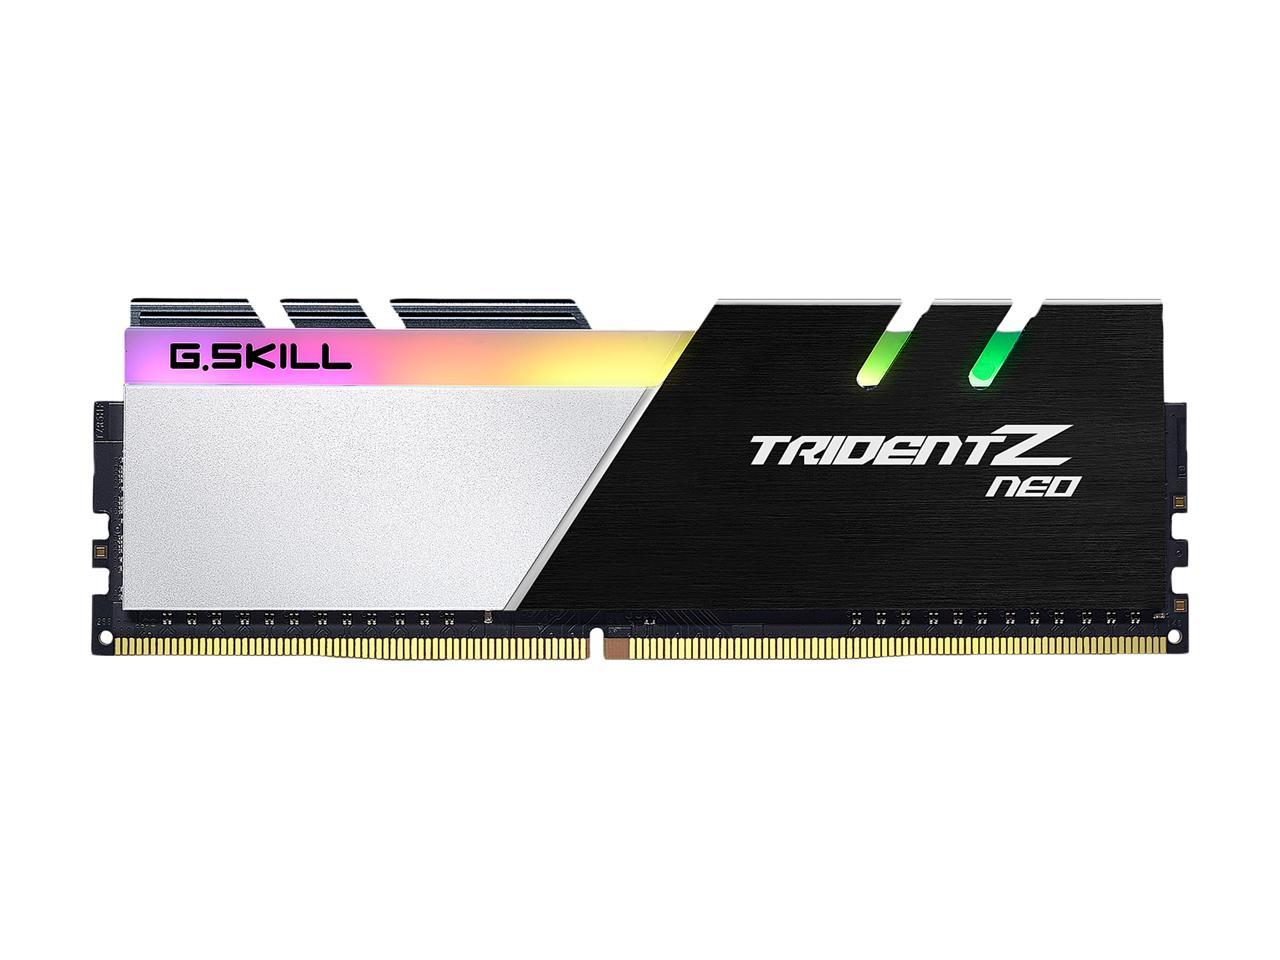 G.SKILL Trident Z Neo Series 64GB (2 x 32GB) 288-Pin PC RAM 